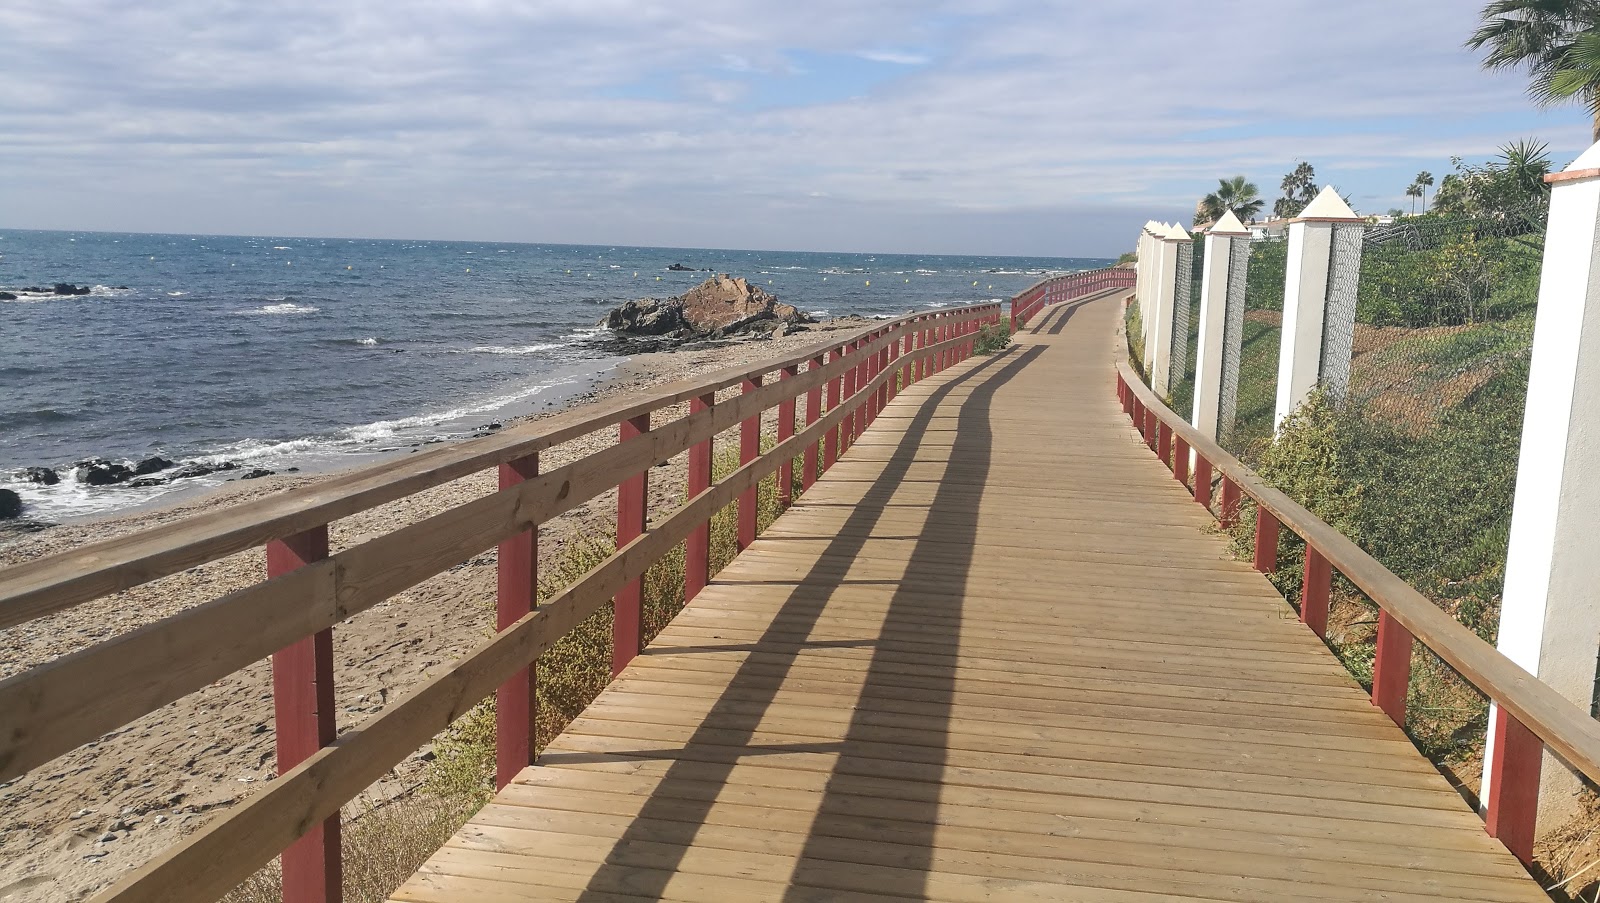 Φωτογραφία του Playa Riviera με επίπεδο καθαριότητας πολύ καθαρό